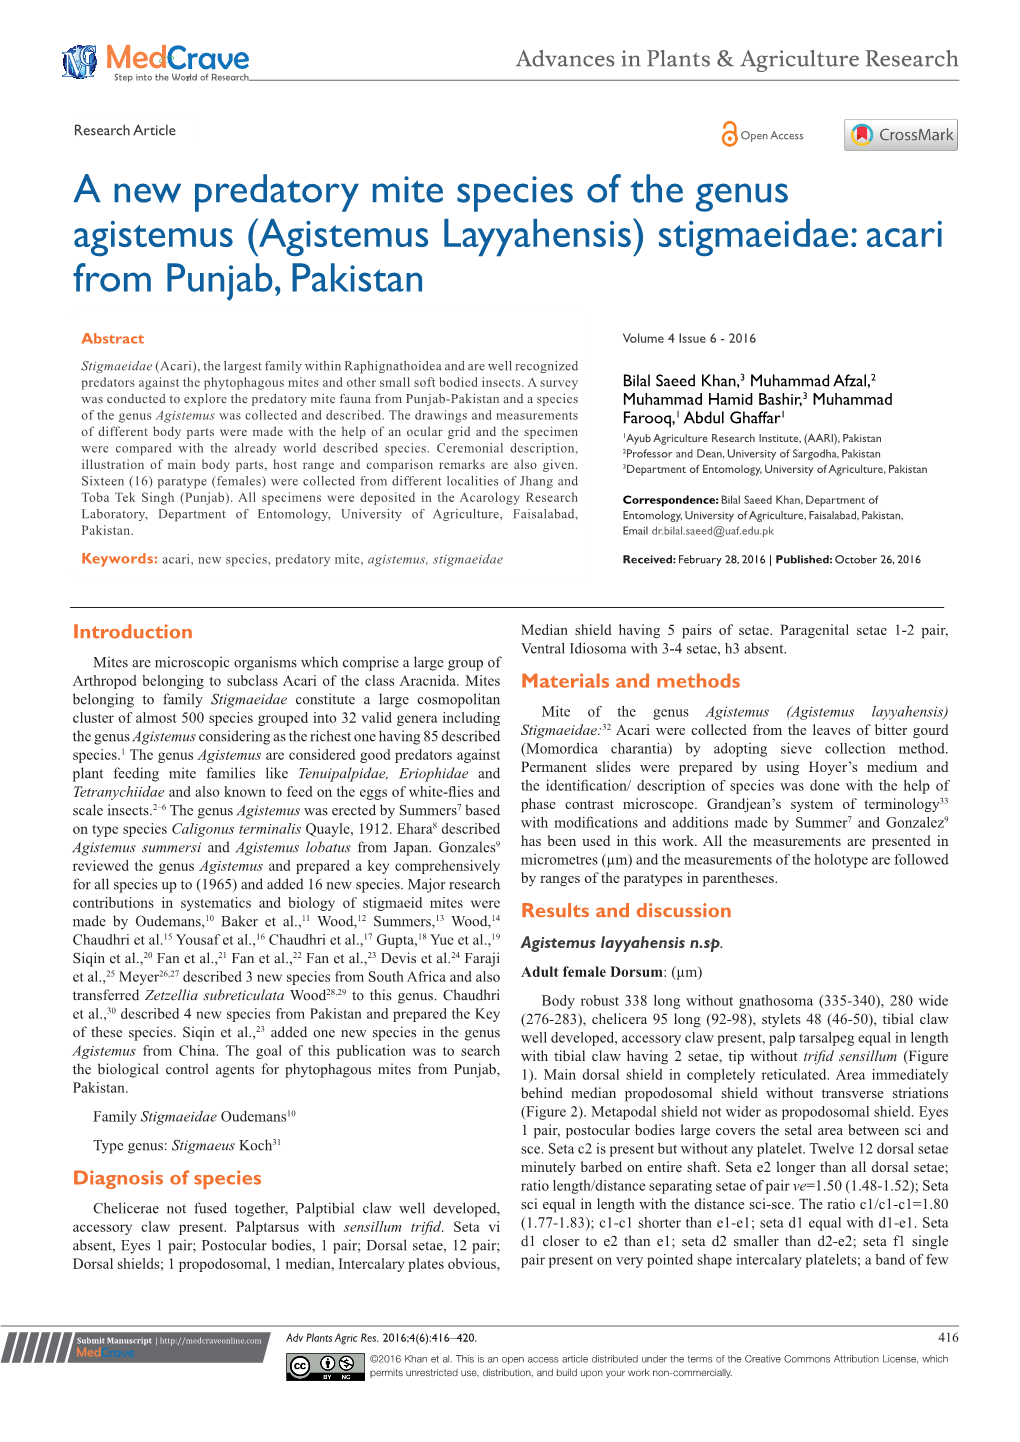 (Agistemus Layyahensis) Stigmaeidae: Acari from Punjab, Pakistan